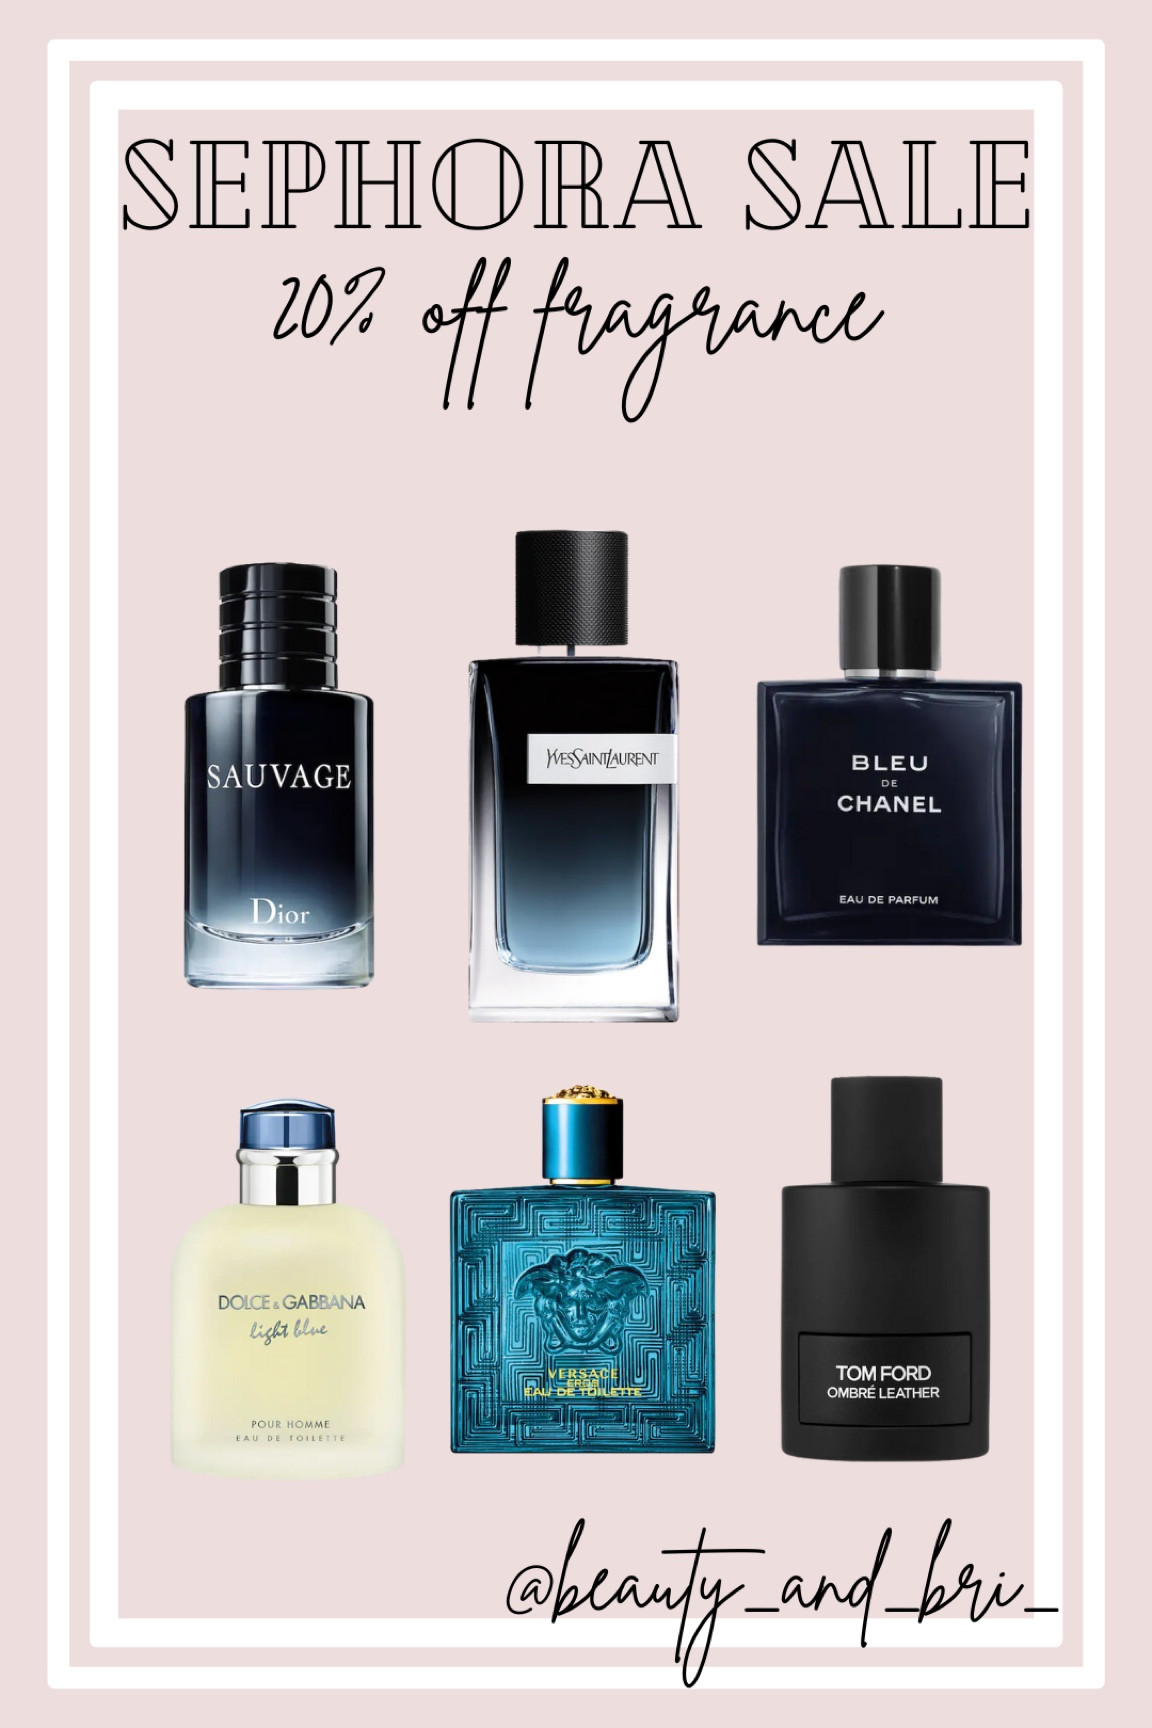 Y Eau de Parfum curated on LTK